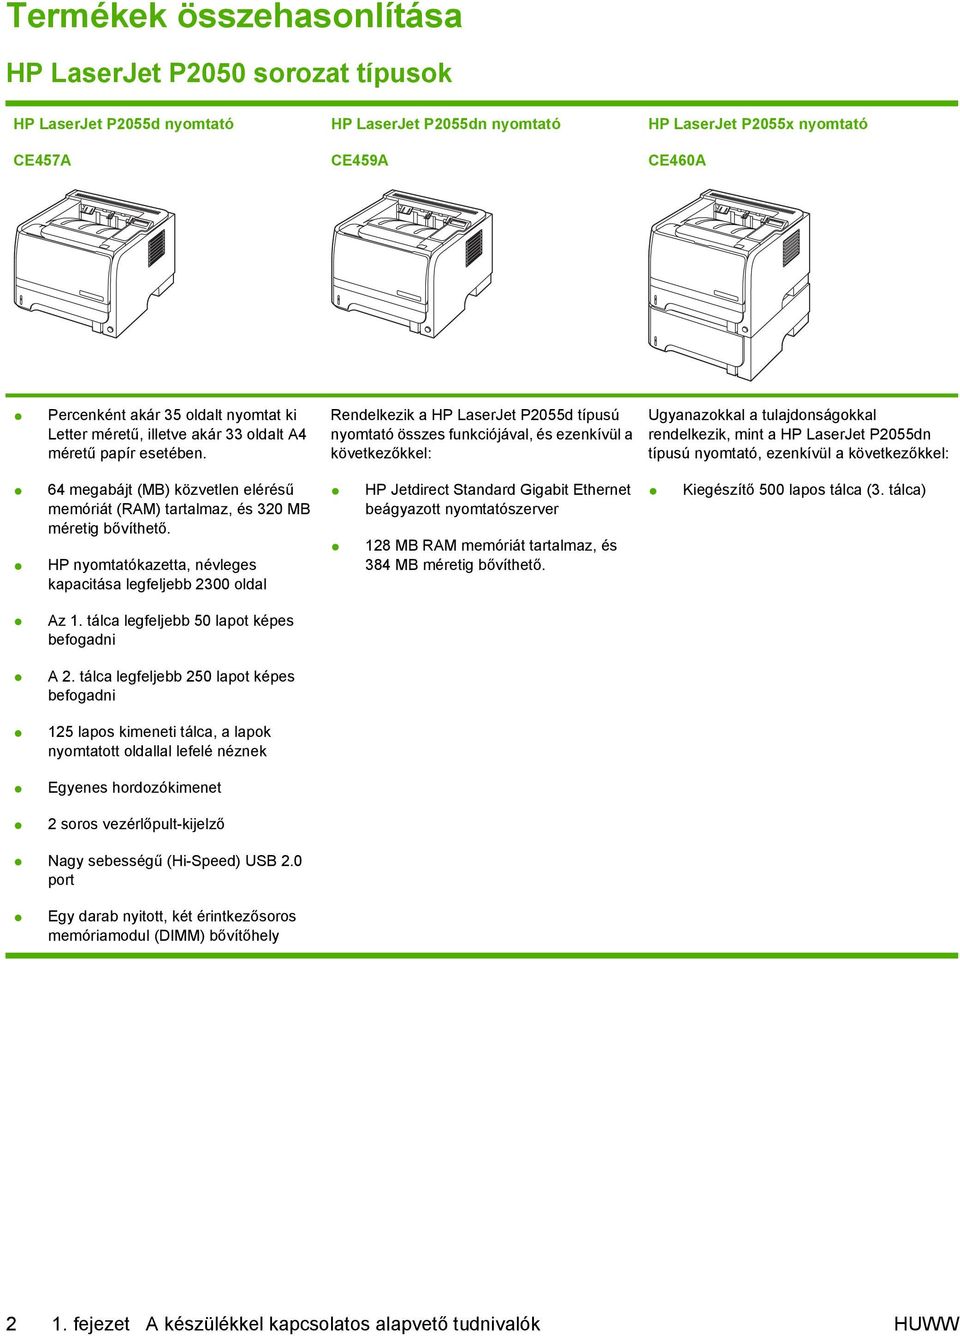 Rendelkezik a HP LaserJet P2055d típusú nyomtató összes funkciójával, és ezenkívül a következőkkel: Ugyanazokkal a tulajdonságokkal rendelkezik, mint a HP LaserJet P2055dn típusú nyomtató, ezenkívül